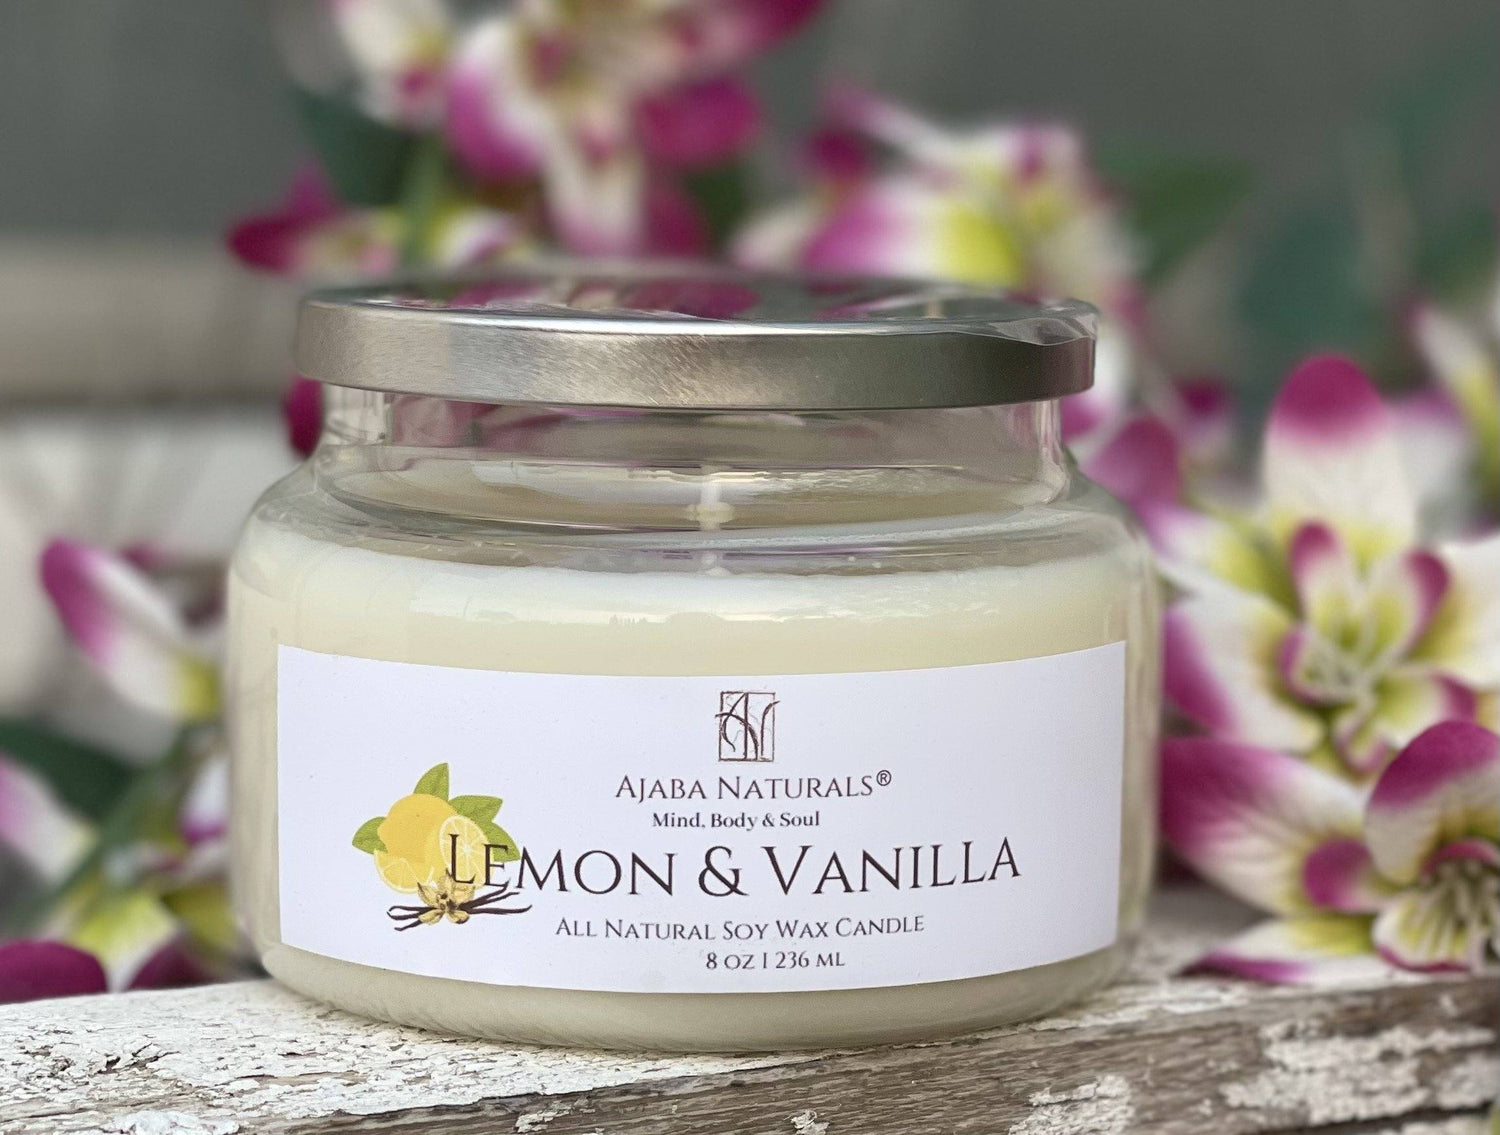 All Natural Lemon & Vanilla Soy Wax Candle AJABA NATURALS® 